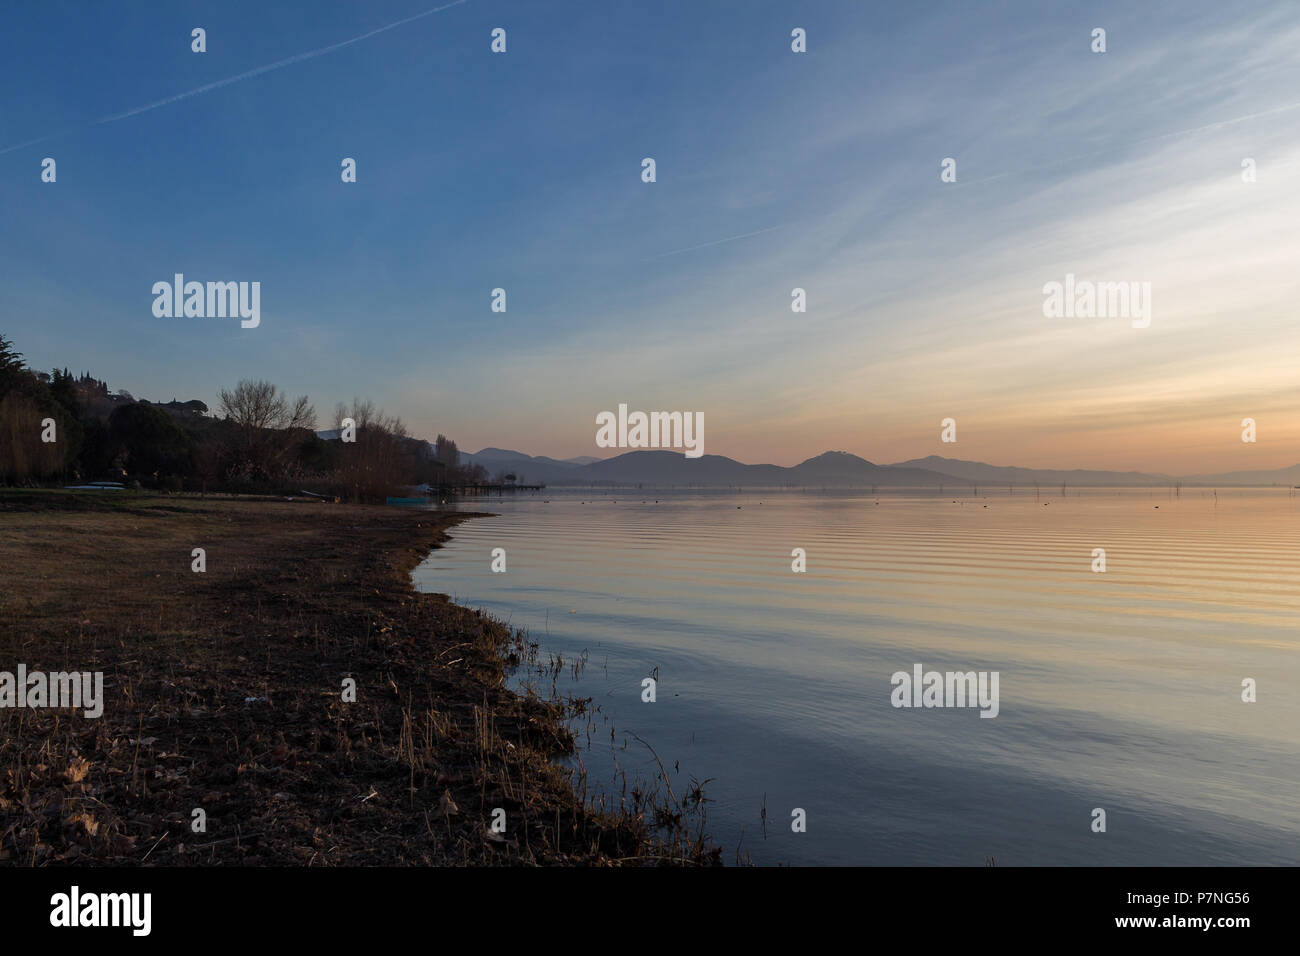 Ein Shooting für einen Sonnenuntergang über einem See, mit schönen, warmen Farben und viele diagonalen Linien durch Wolken und Wasser Wellen erstellt Stockfoto